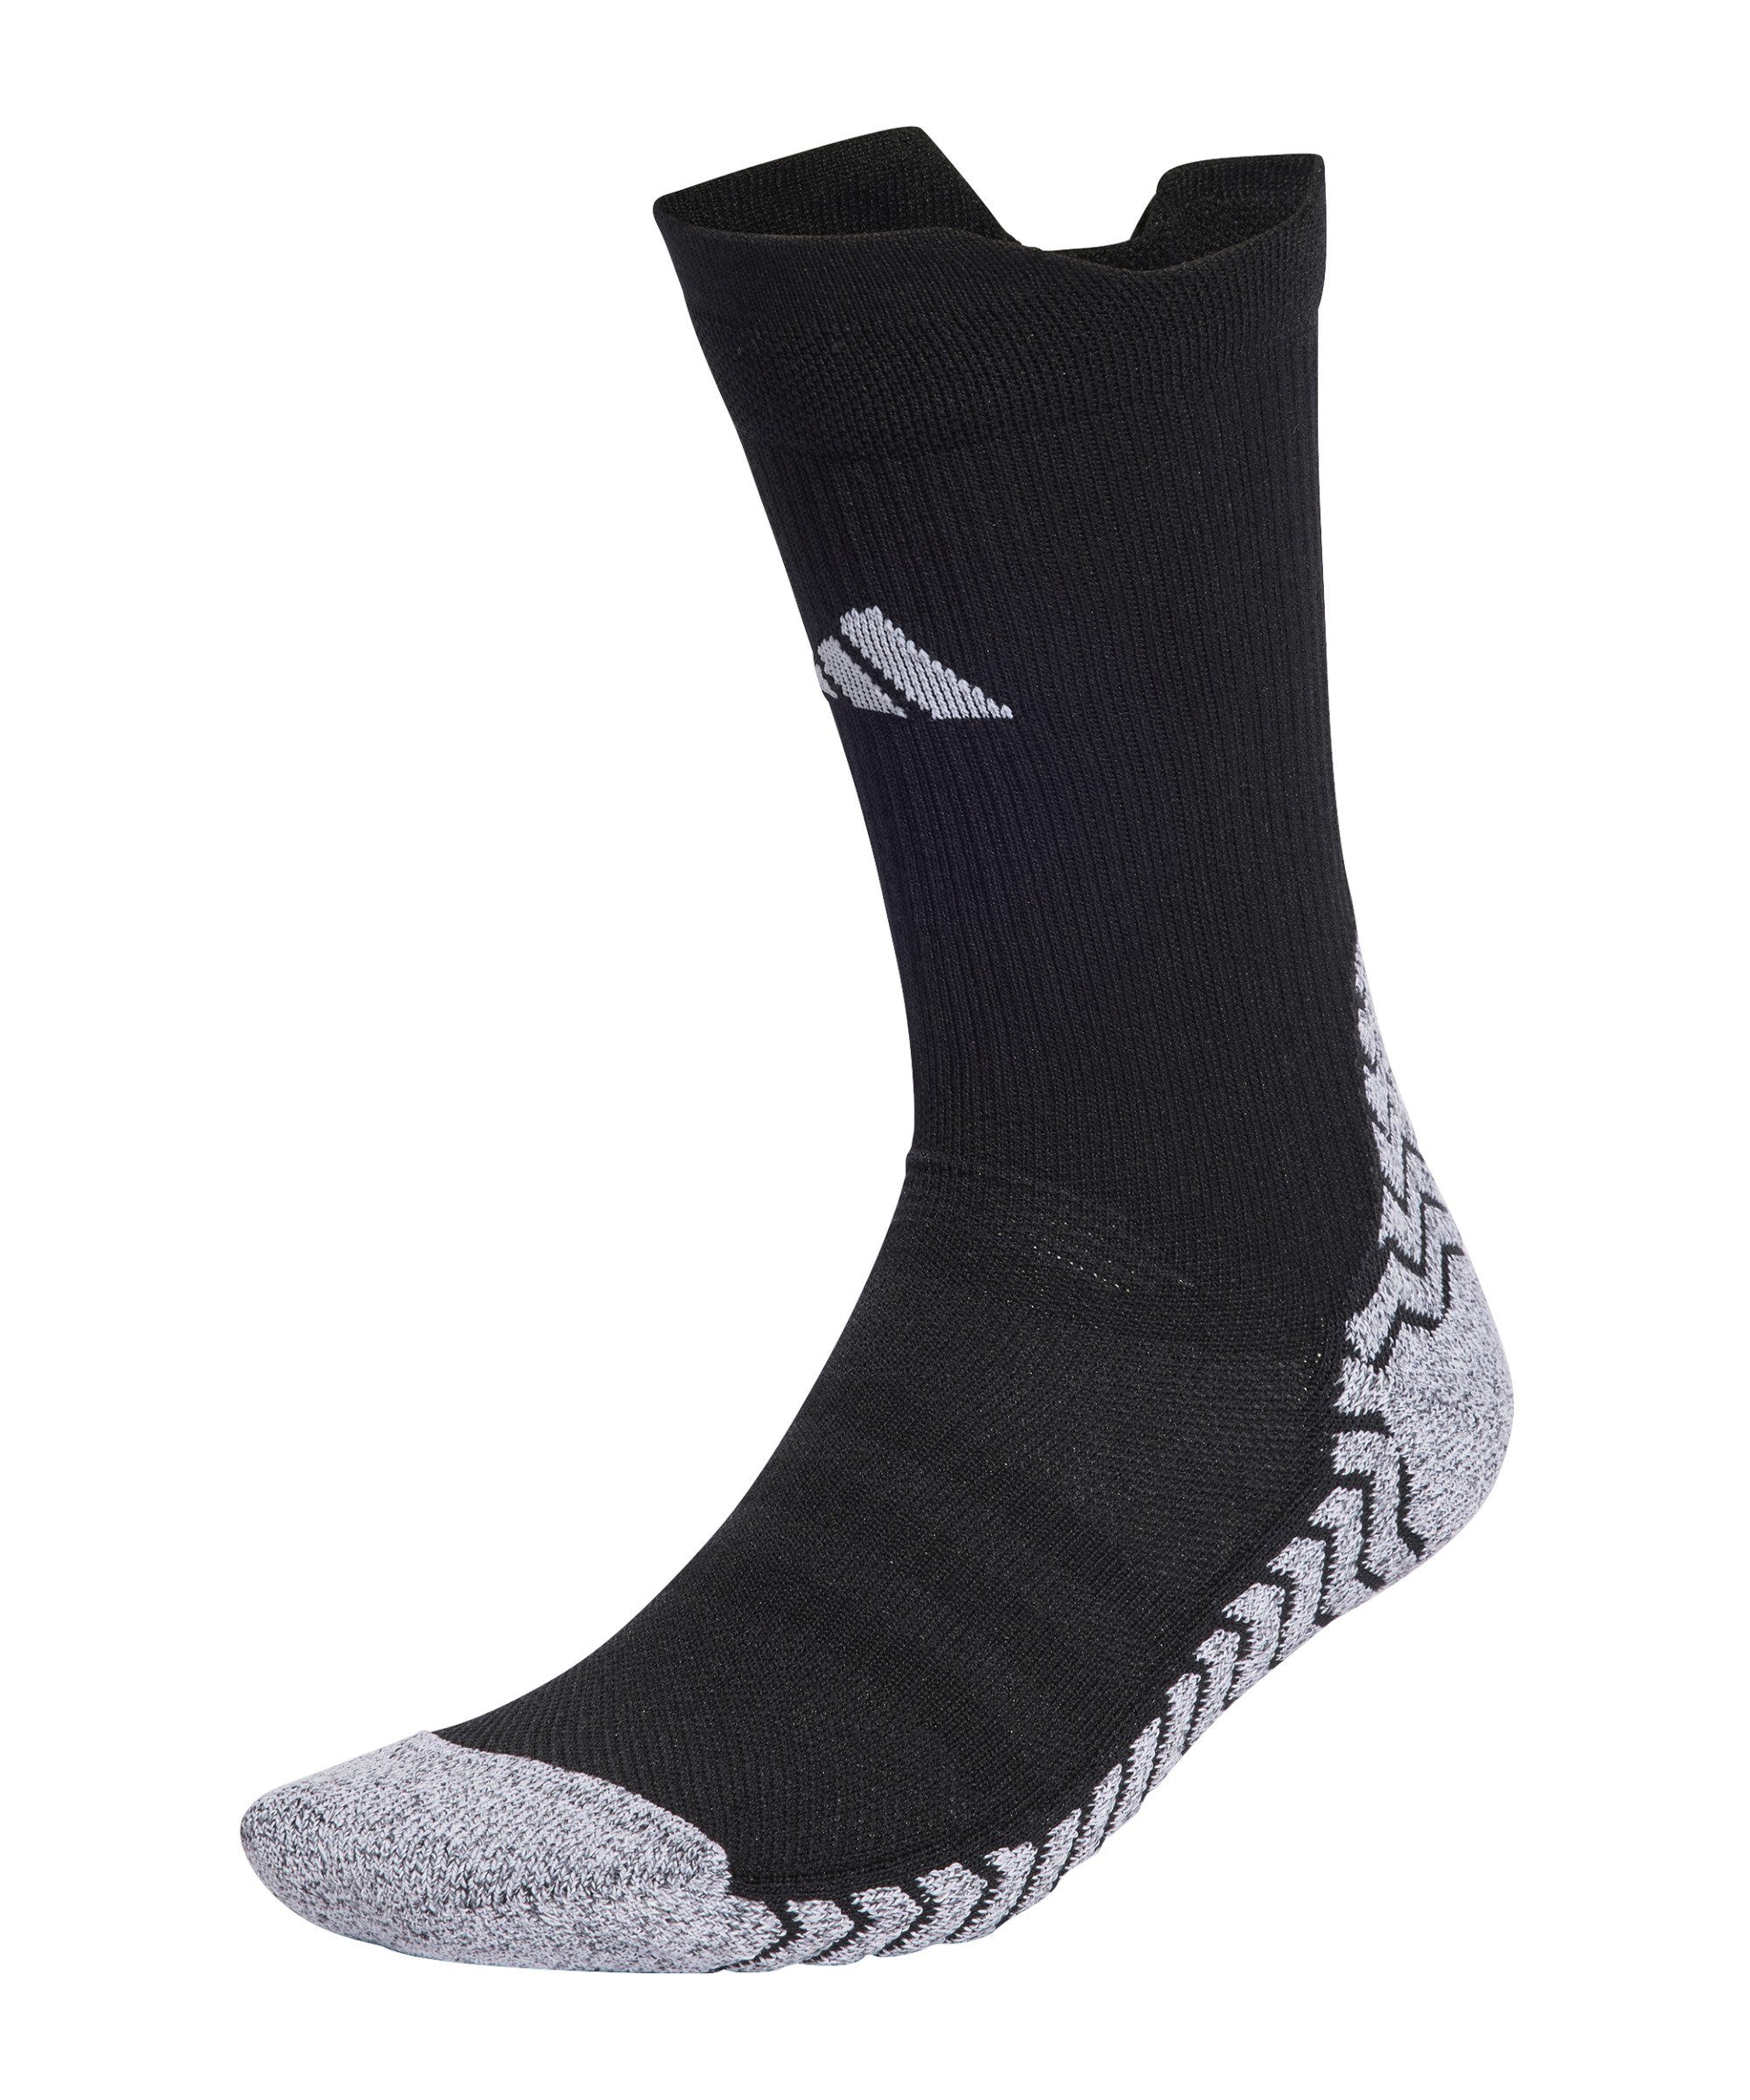 adidas Performance default Sportsocken Grip Socken schwarzweiss